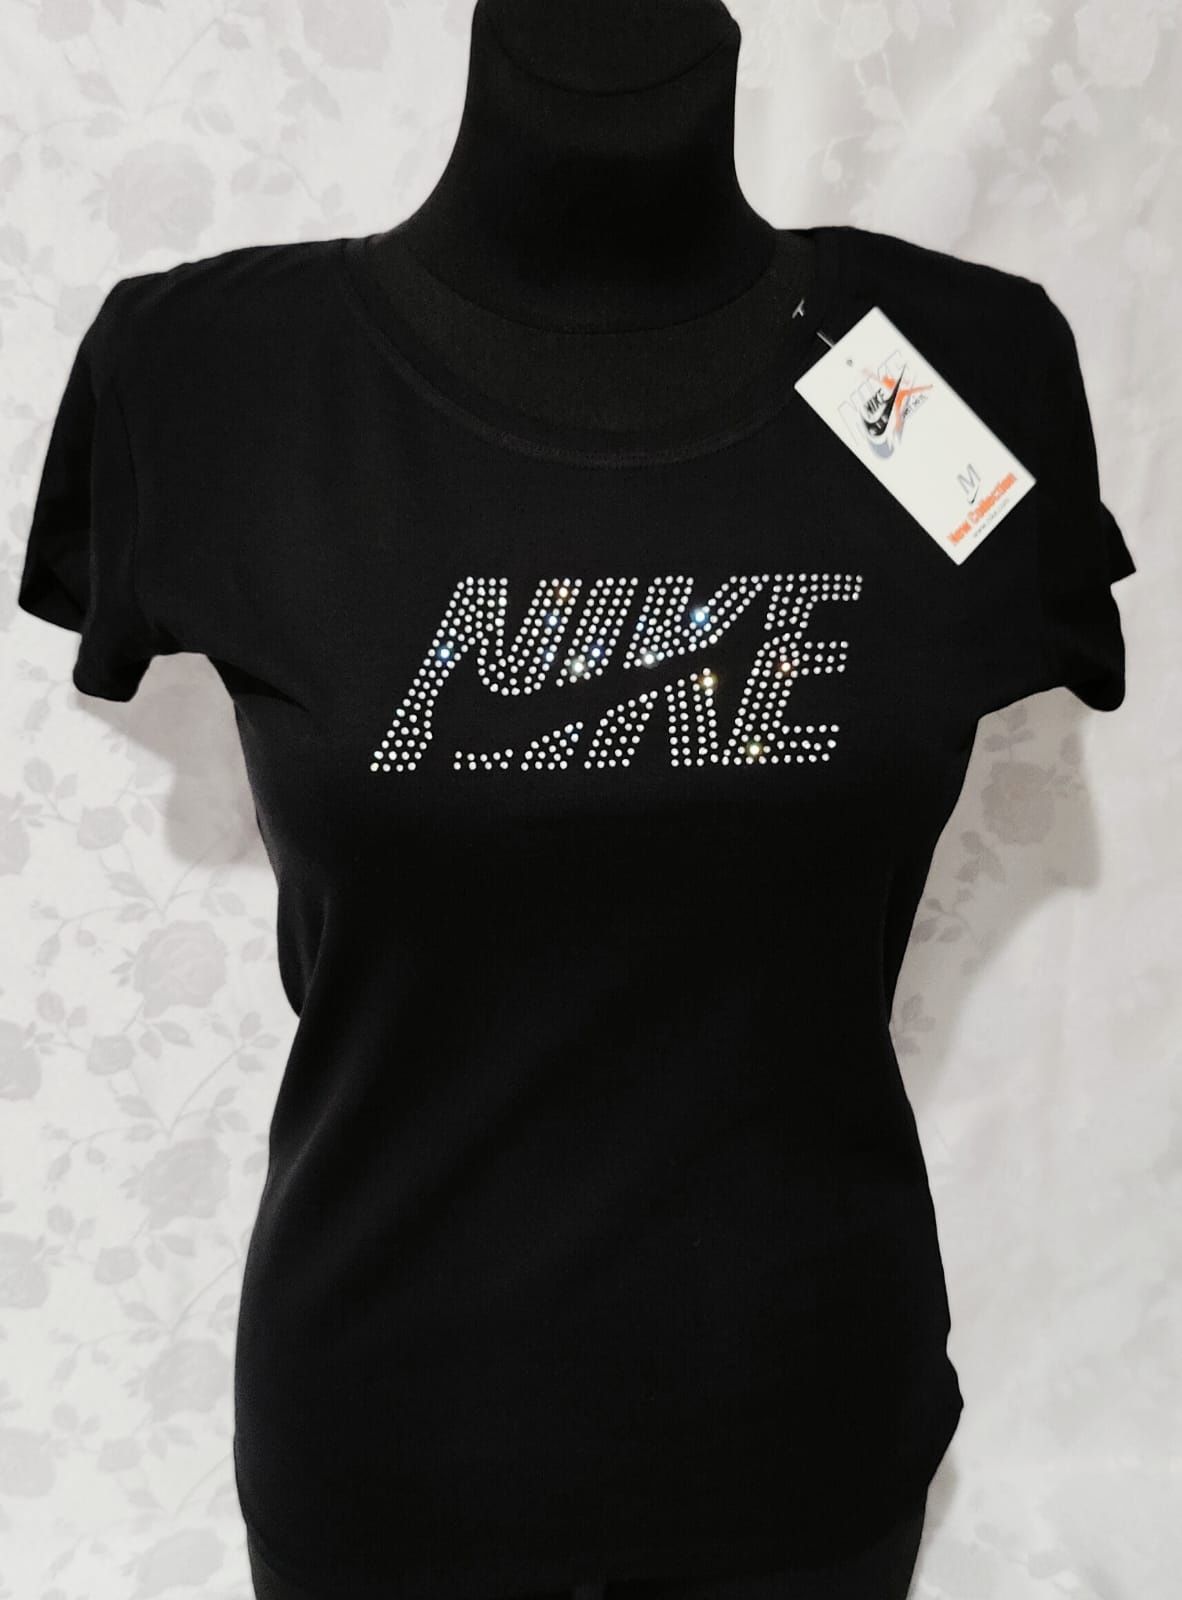 Czarna koszulka damska Nike S M L XL wysyłka pobranie bardzo ładna hit